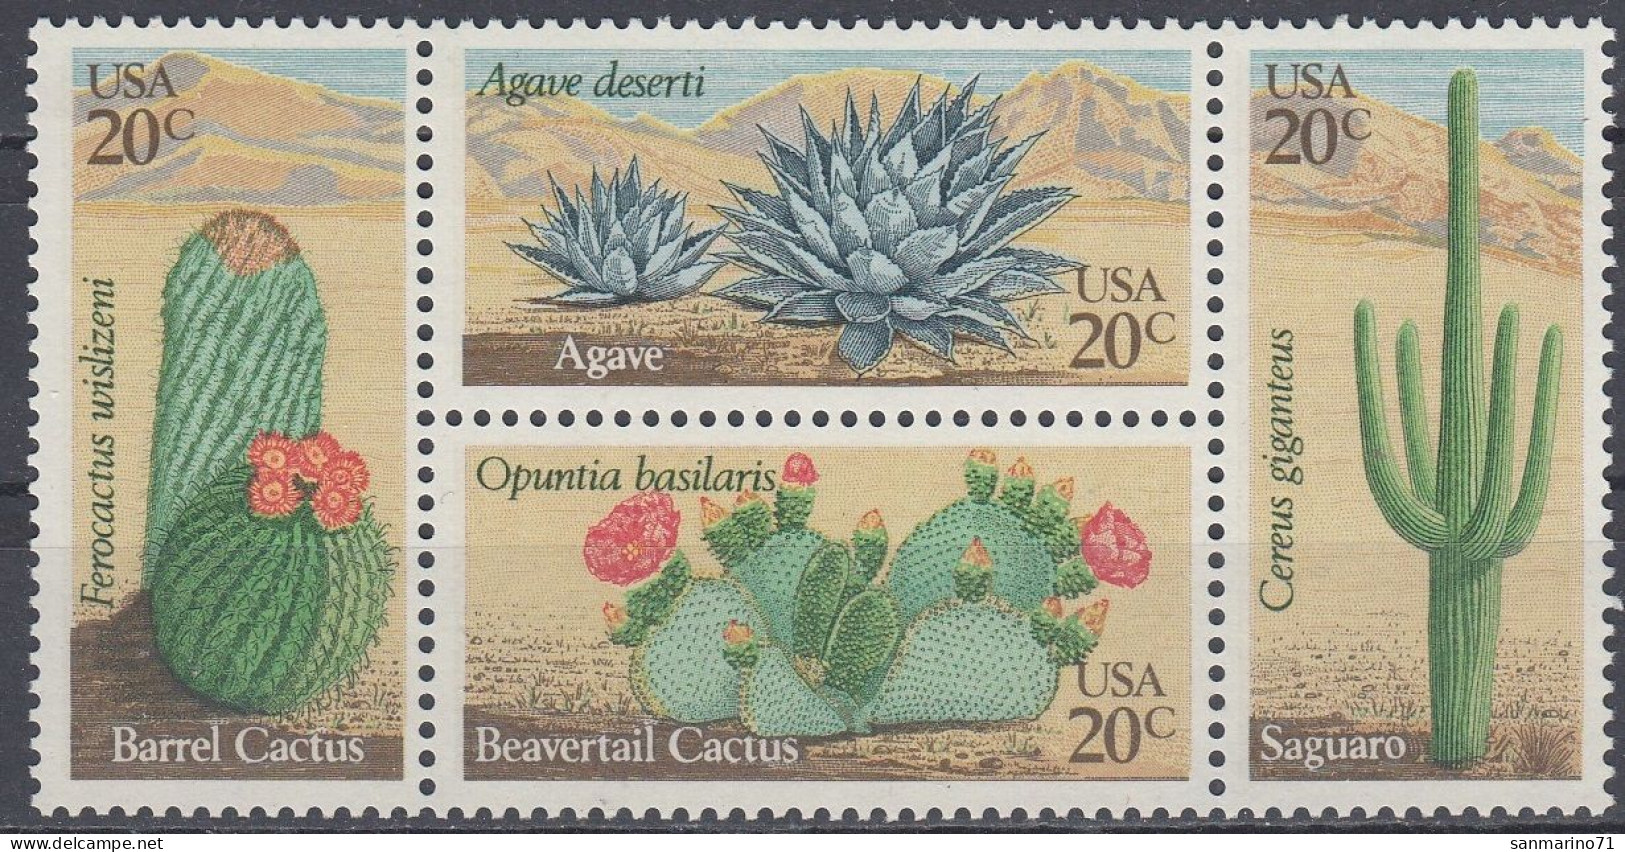 UNITED STATES 1517-1520,unused - Cactusses